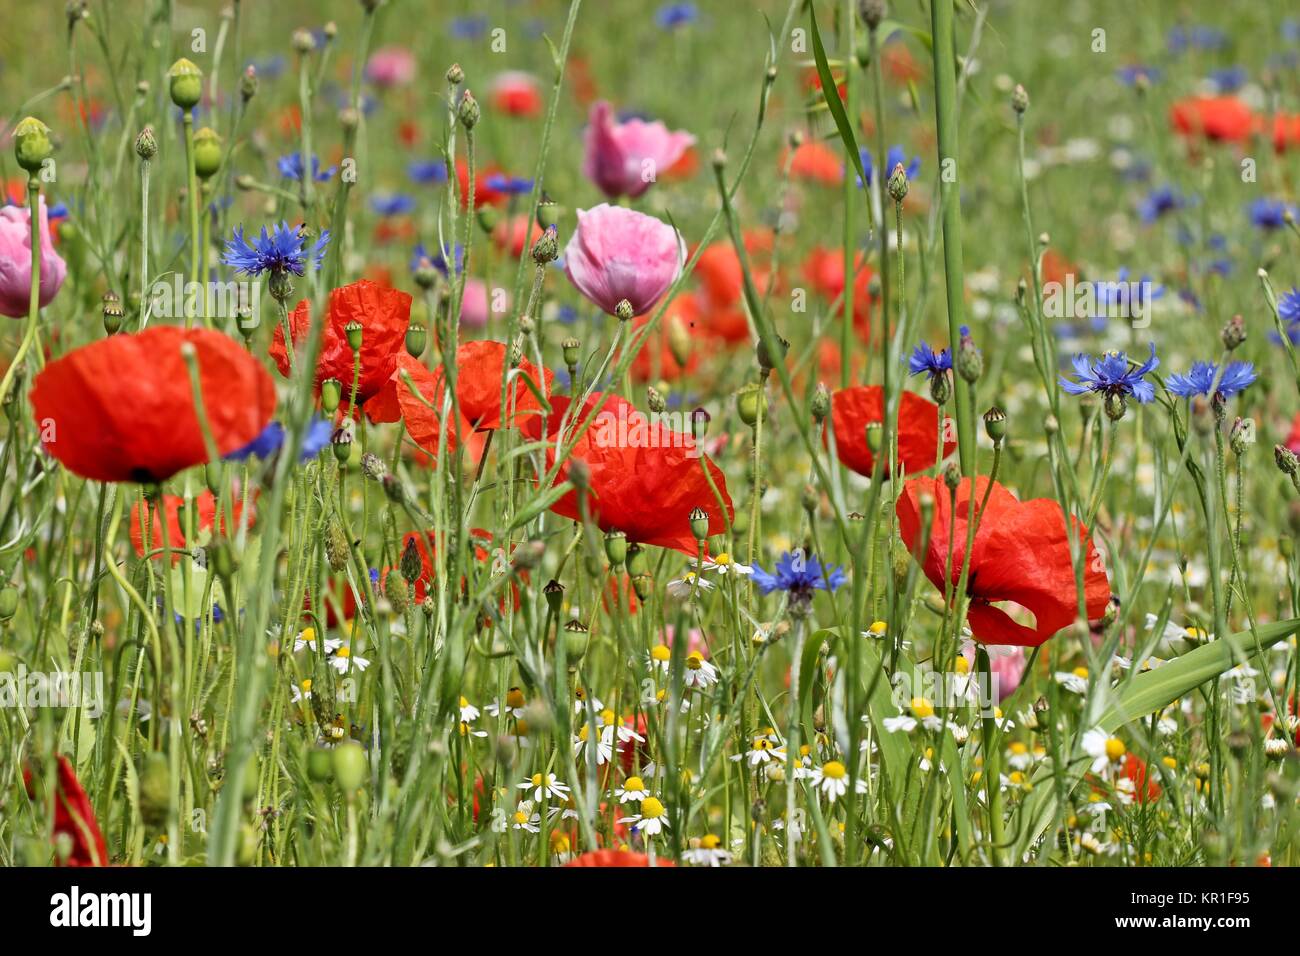 campo con papavero, gossip papavero, camomilla e fiori di mais Foto Stock